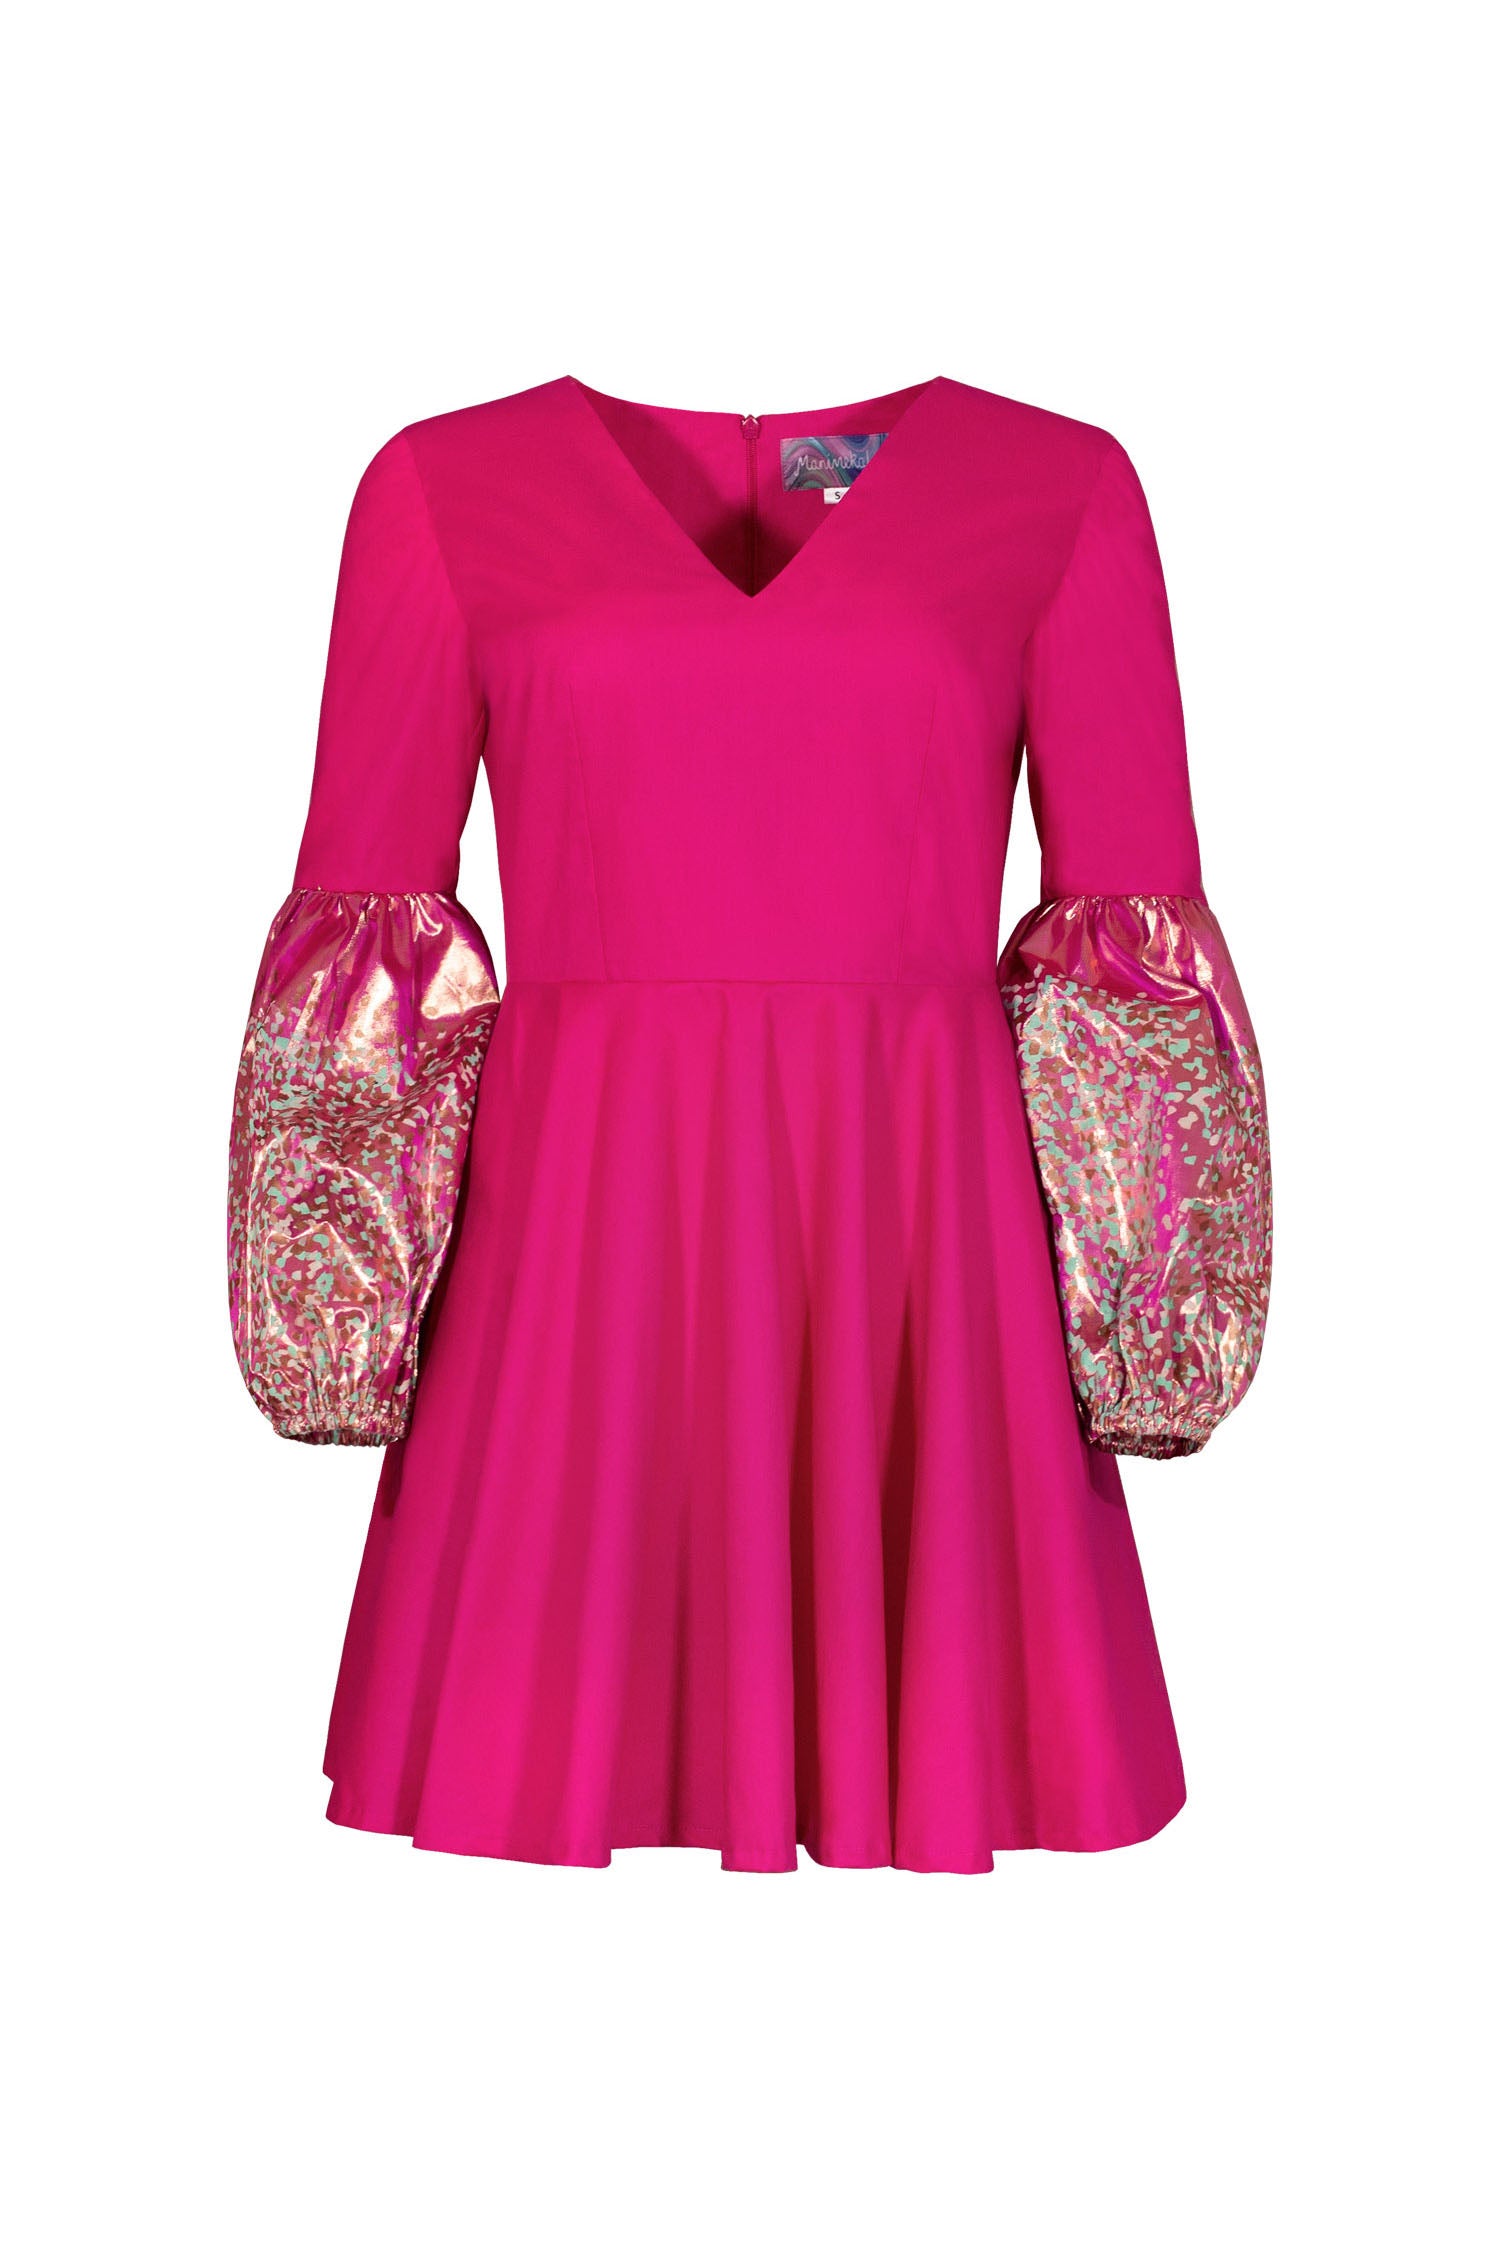 Mayam dress - raspberry pink